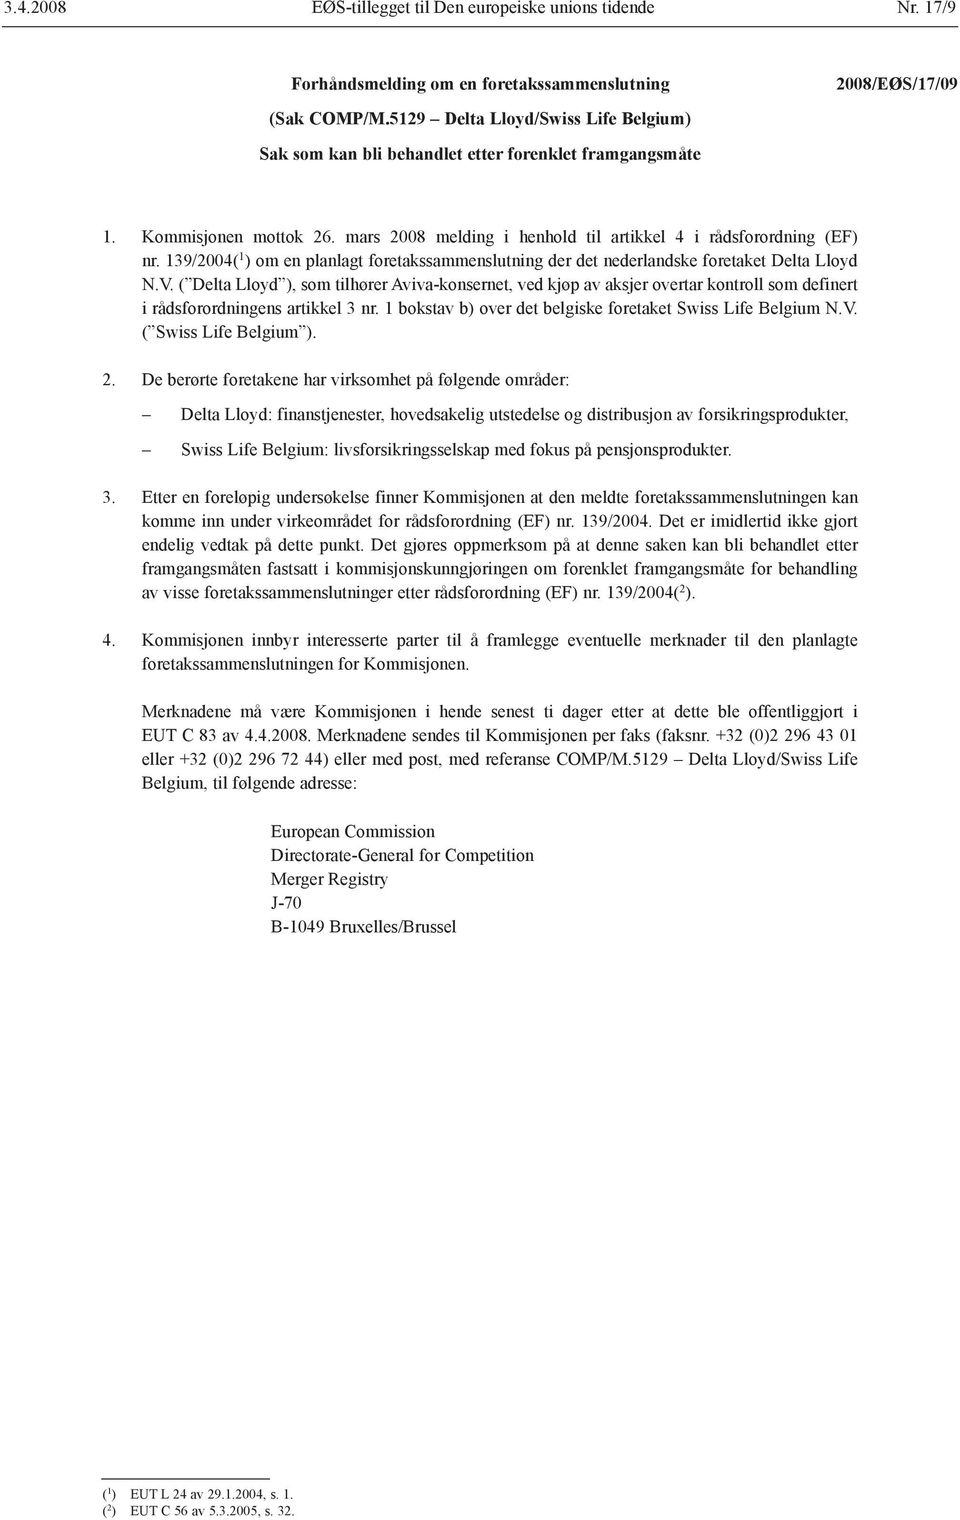 139/2004( 1 ) om en planlagt foretakssammenslutning der det nederlandske foretaket Delta Lloyd N.V.